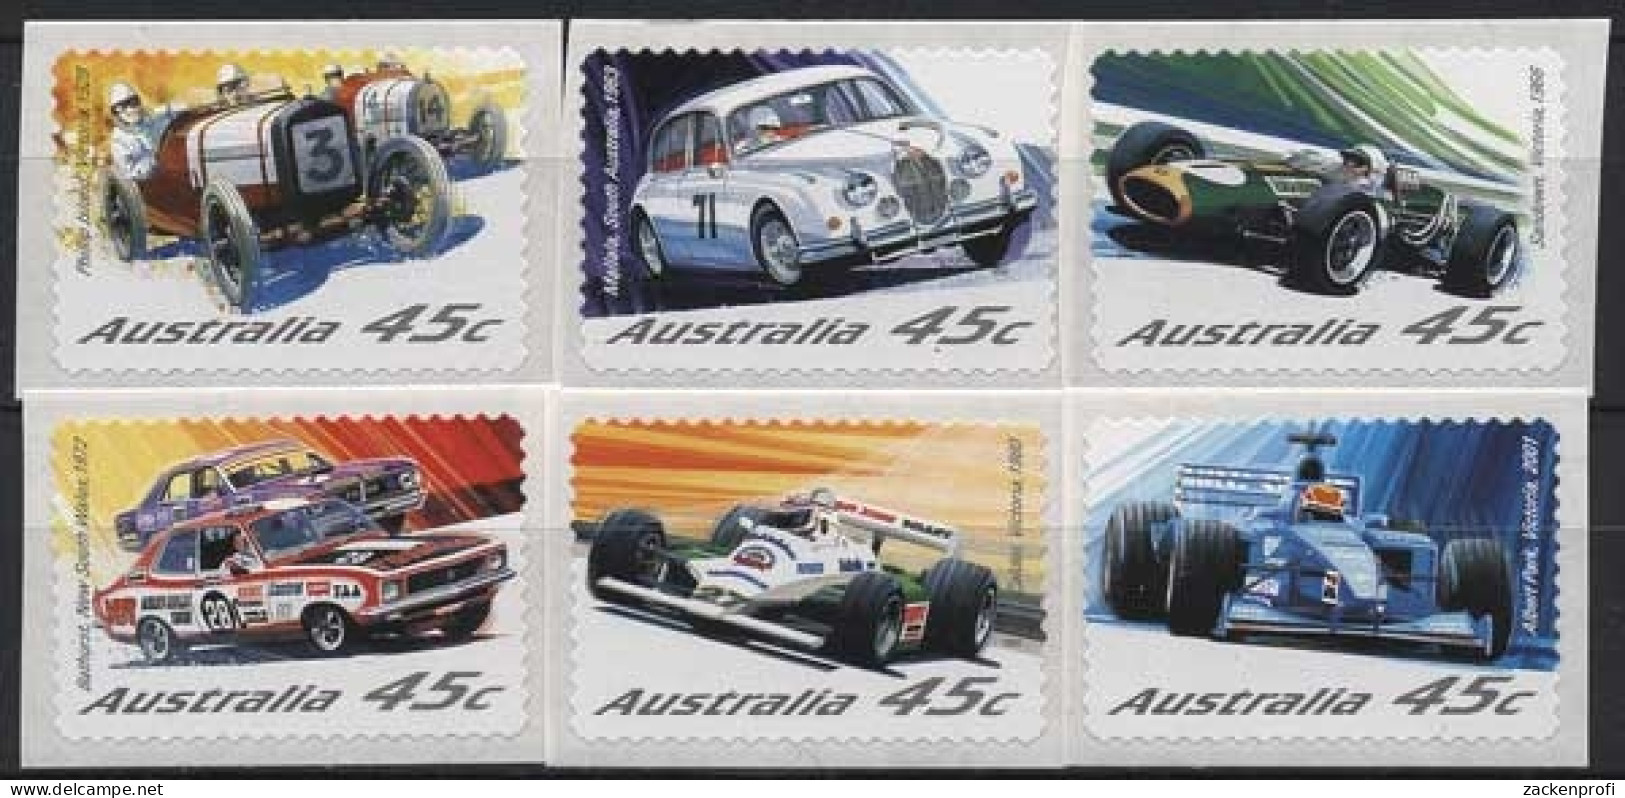 Australien 2002 Automobilrennsport 2119/24 Postfrisch - Nuovi